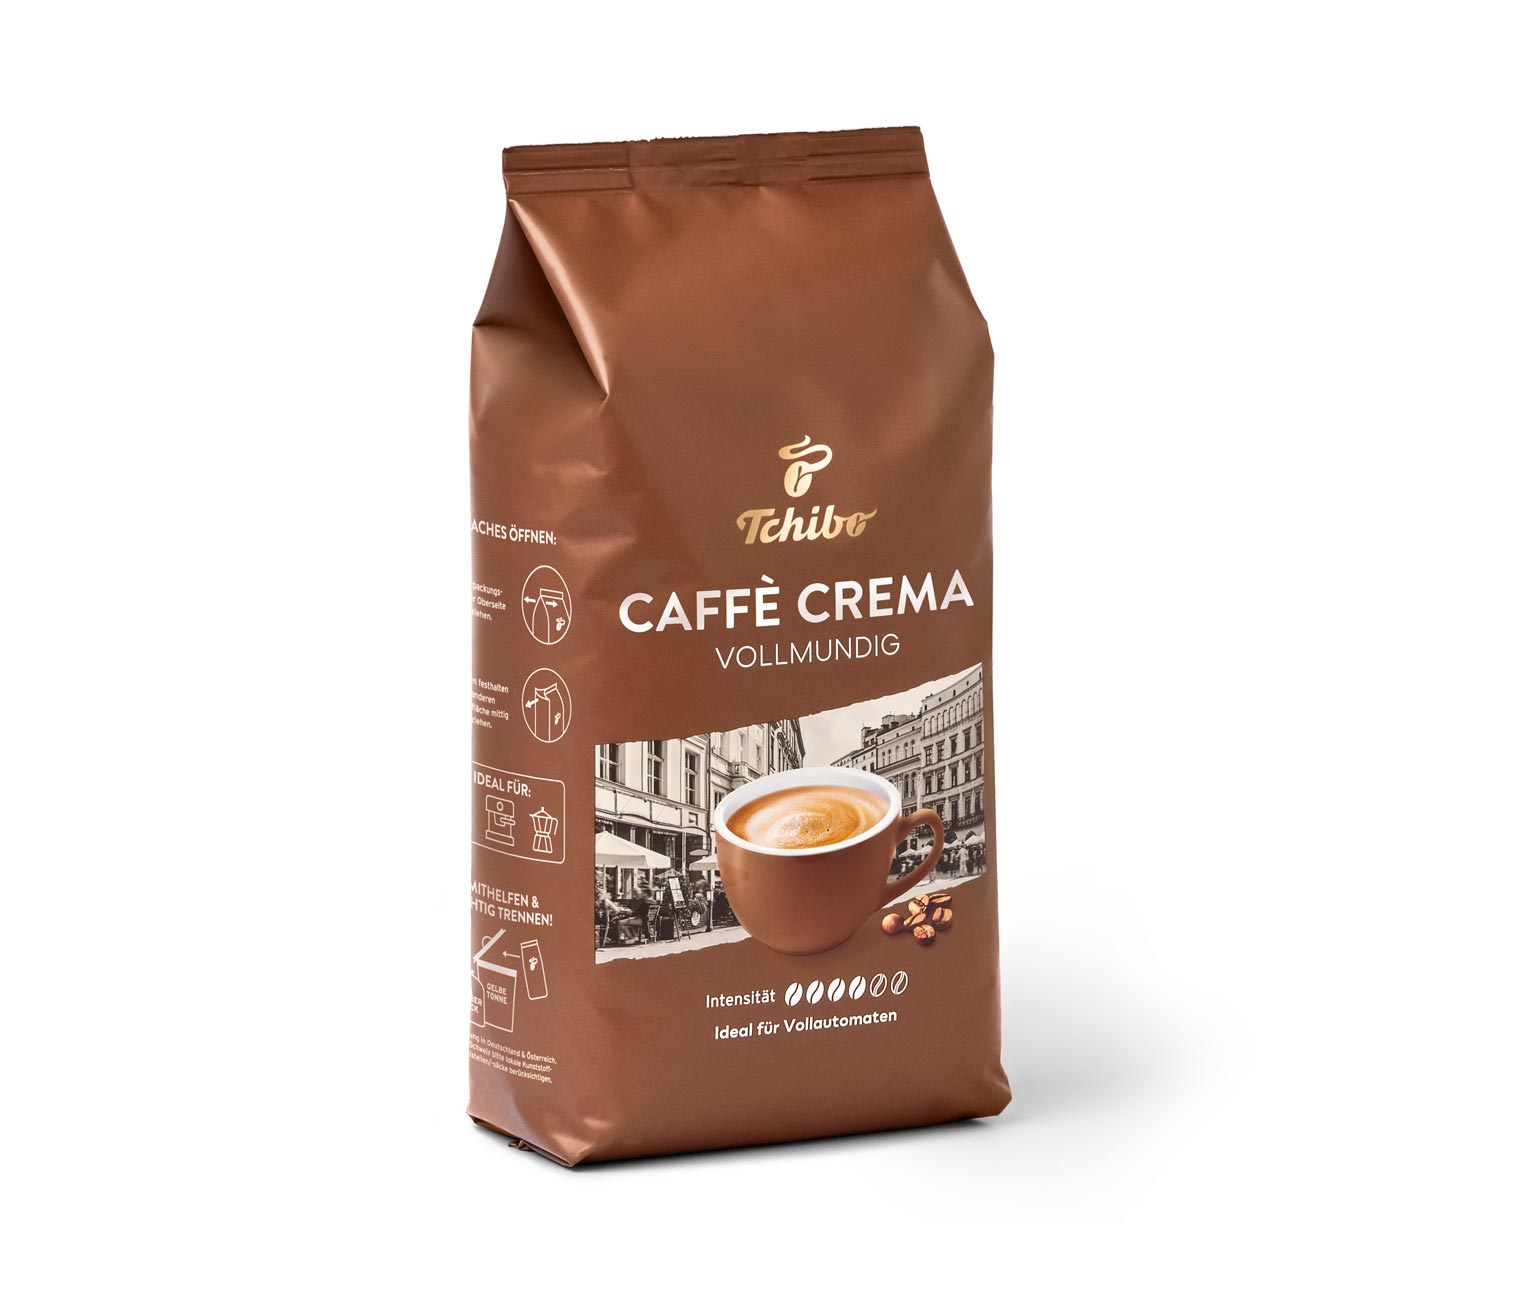 Caffè Crema Vollmundig - 2x 1kg Ganze Bohne online bestellen bei Tchibo  492557